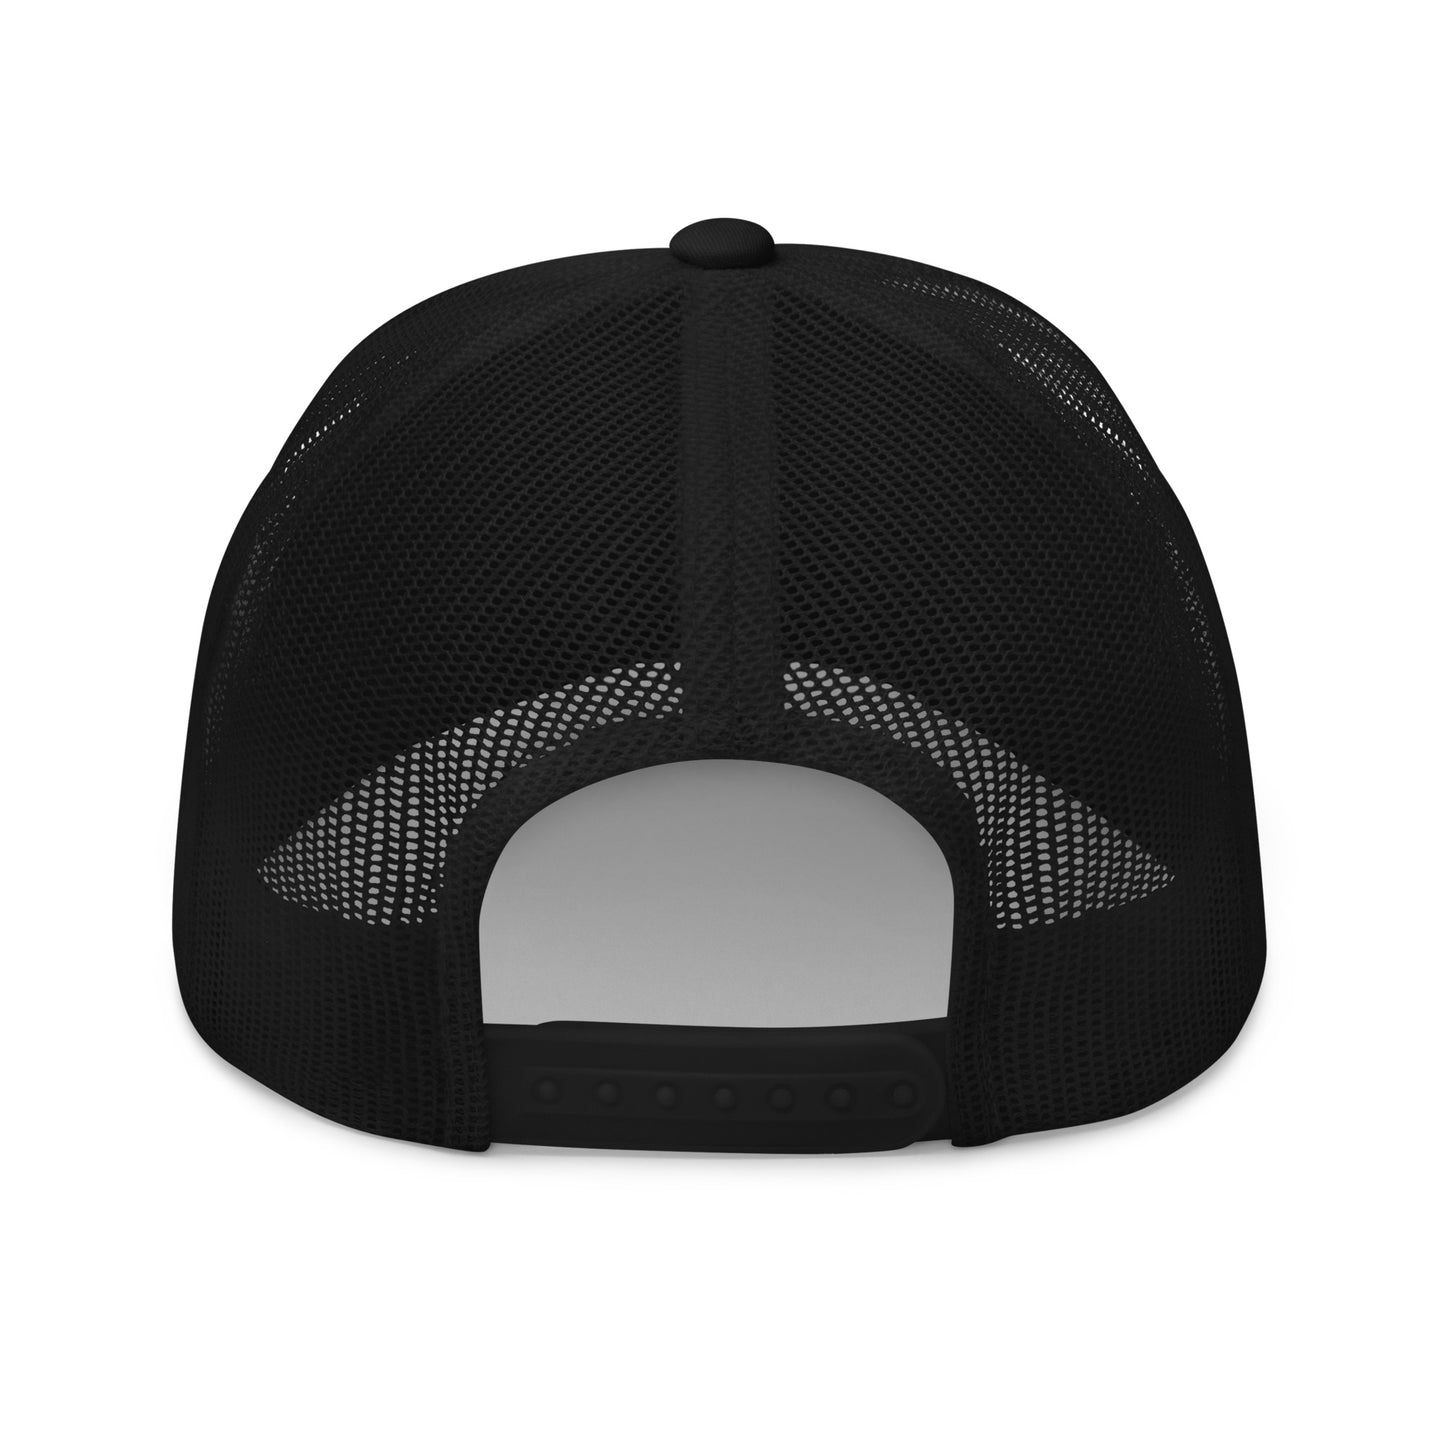 Roundel Trucker Hat - Black & White • YYT St. John's • YHM Designs - Image 07